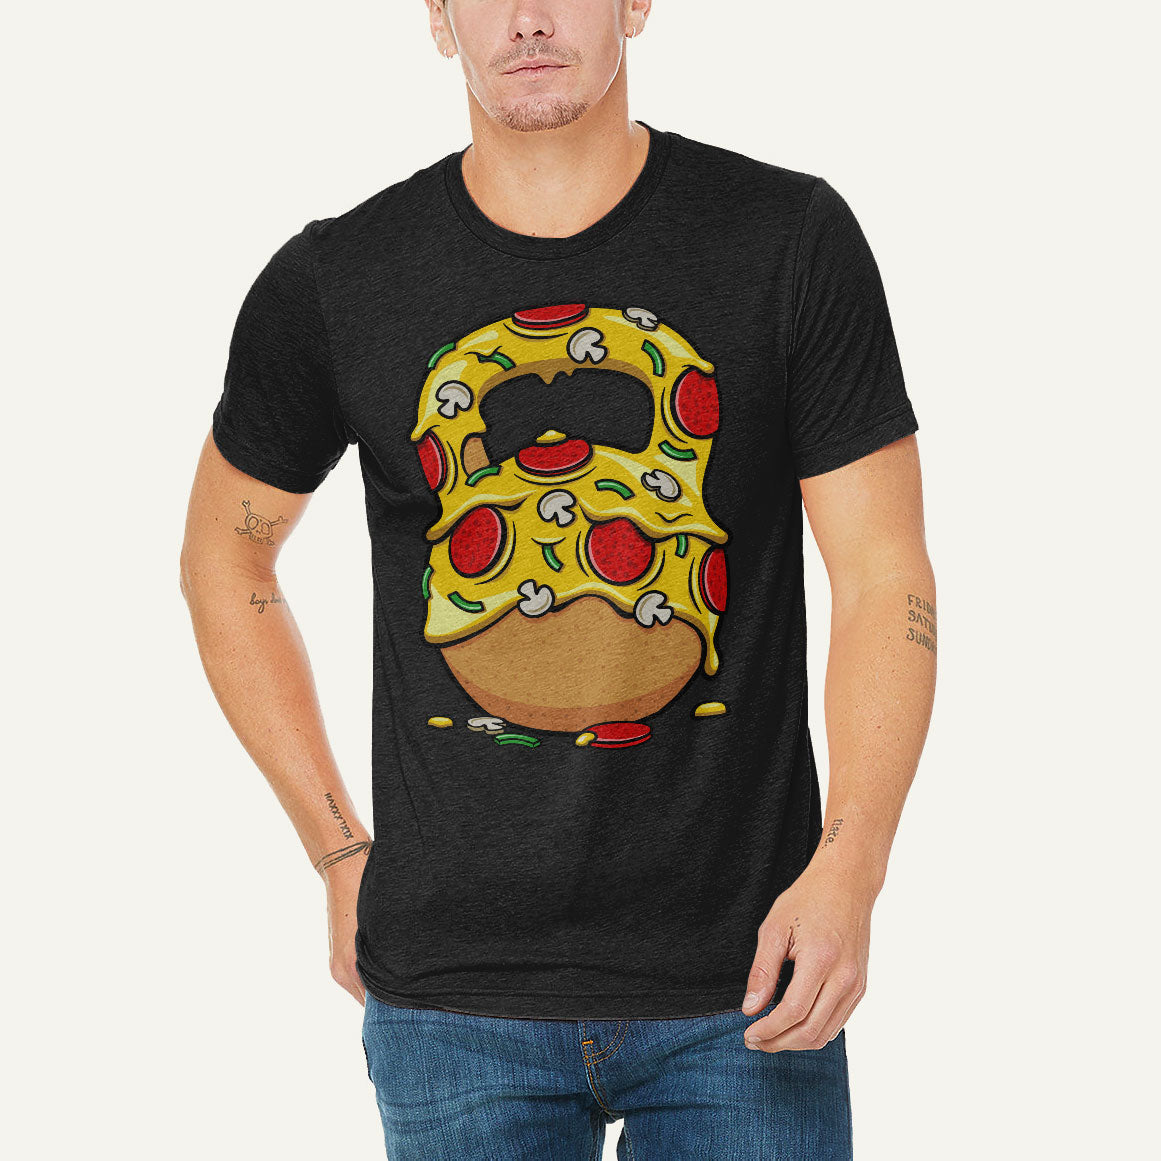 Pizza Kettlebell Design Men’s Triblend T-Shirt